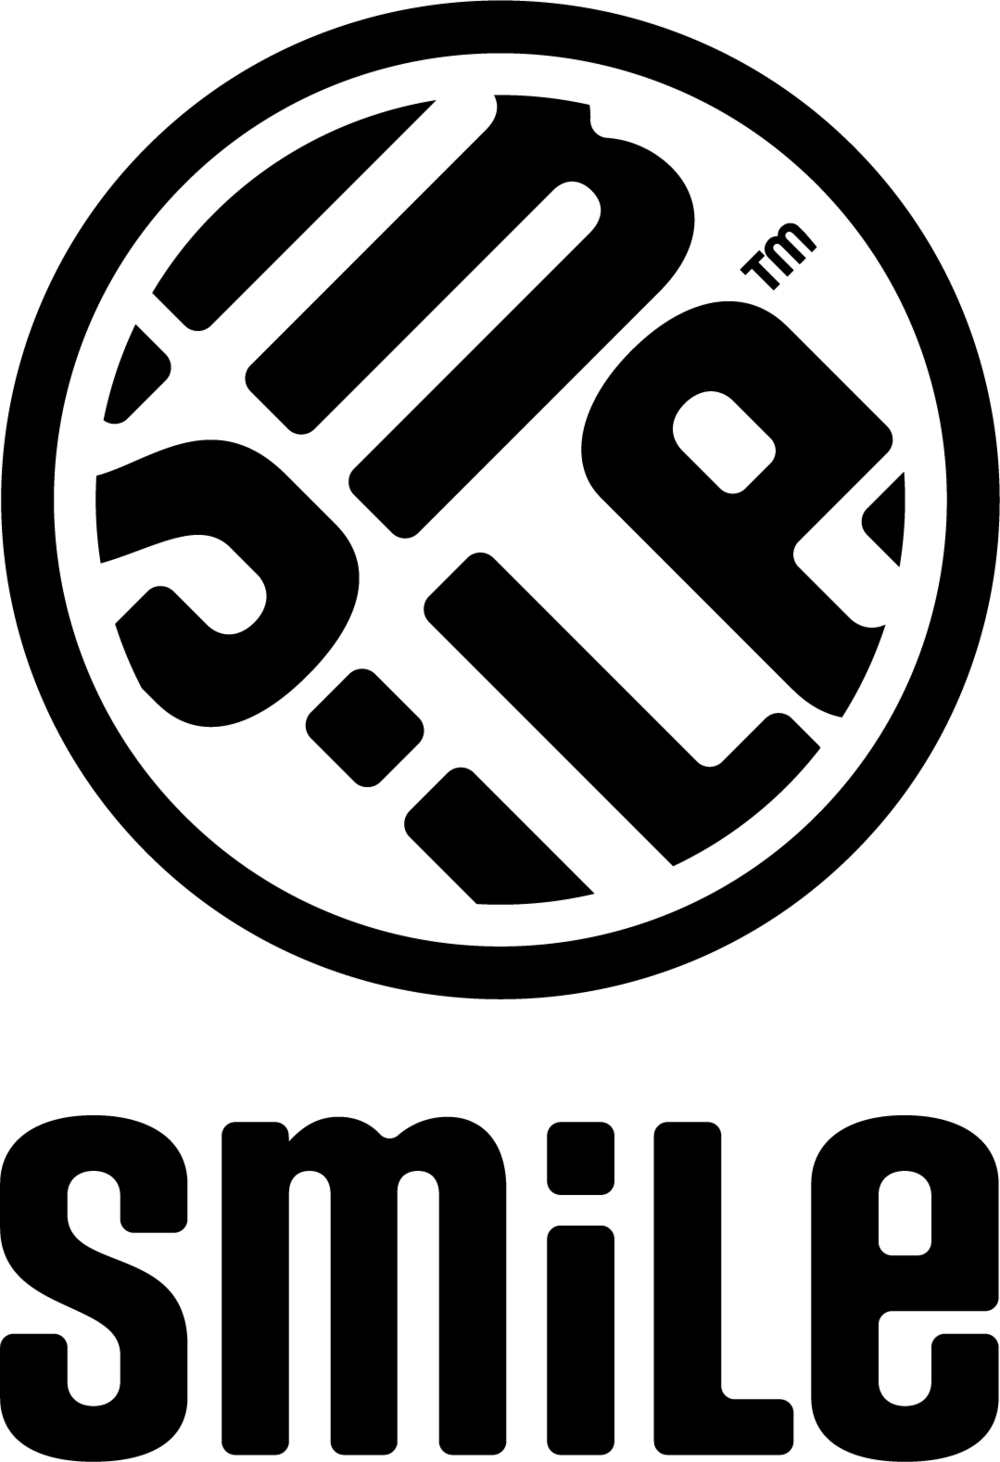 NEW SmiLe logo - vertical - Black - png.bmp